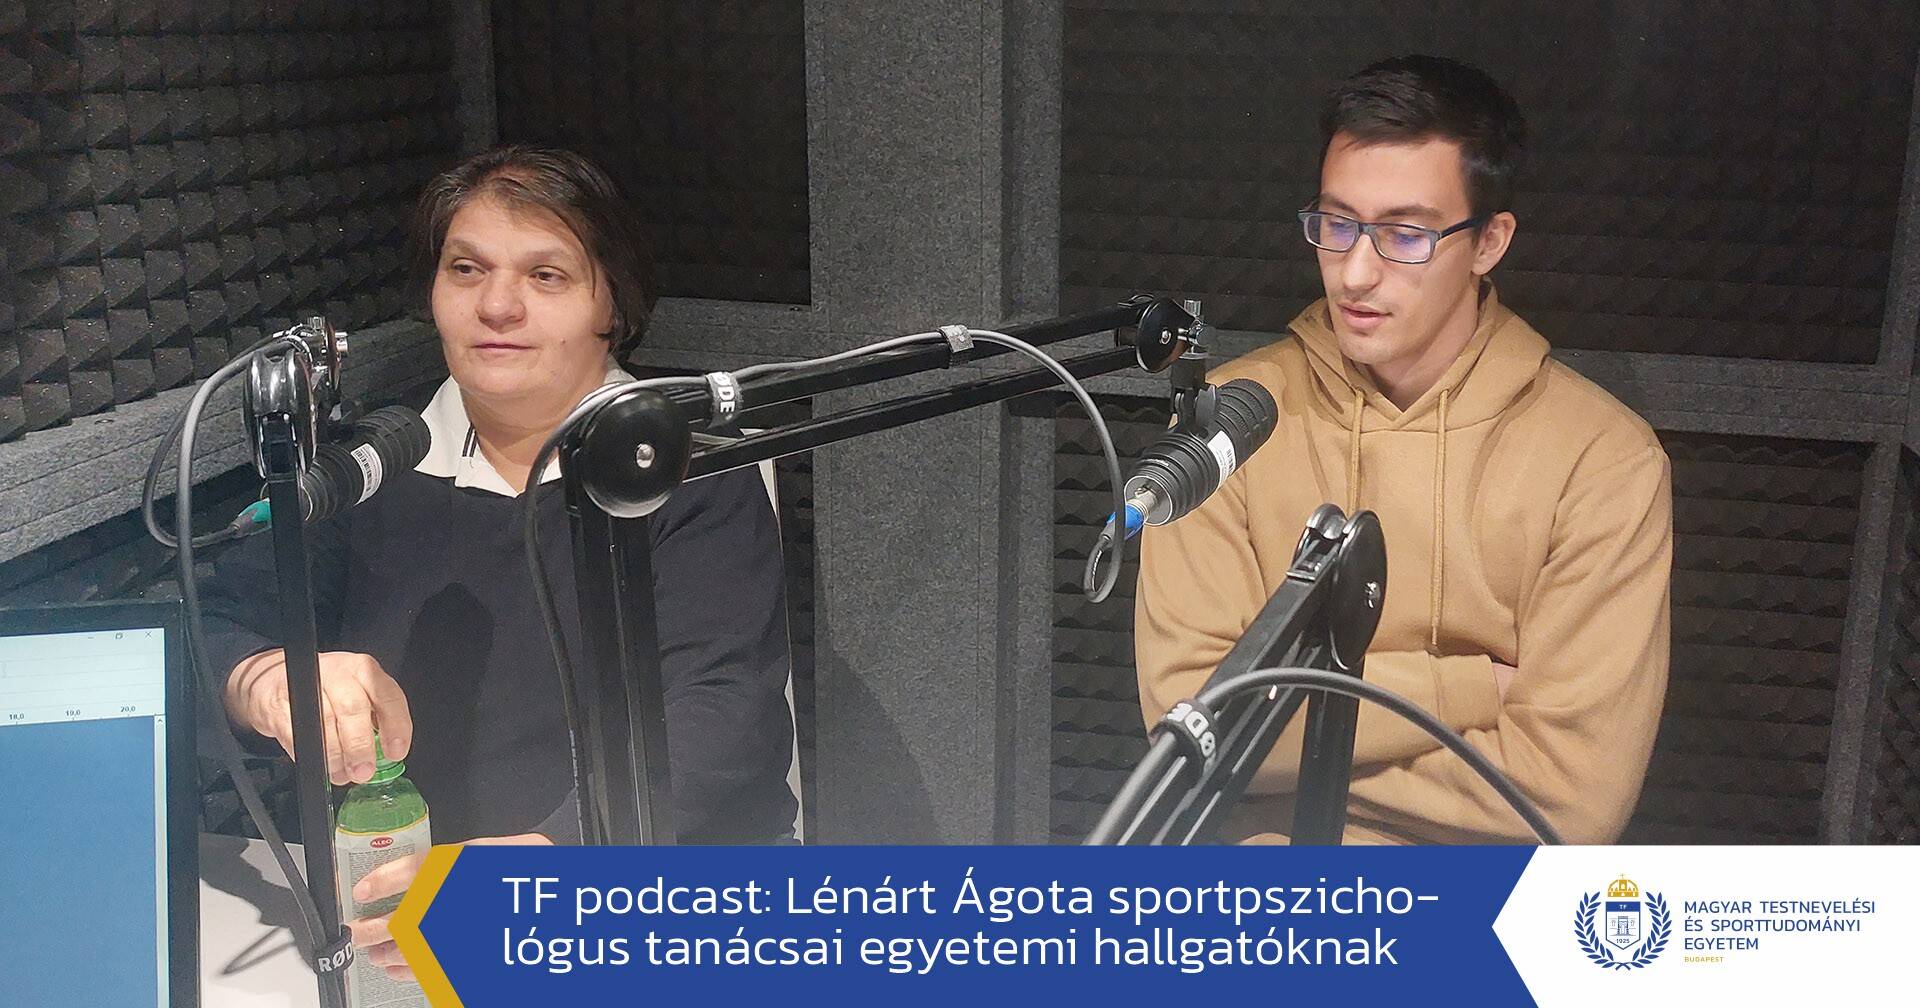 Lénárt Ágota sportpszichológus tanácsai egyetemi hallgatóknak (podcast) 